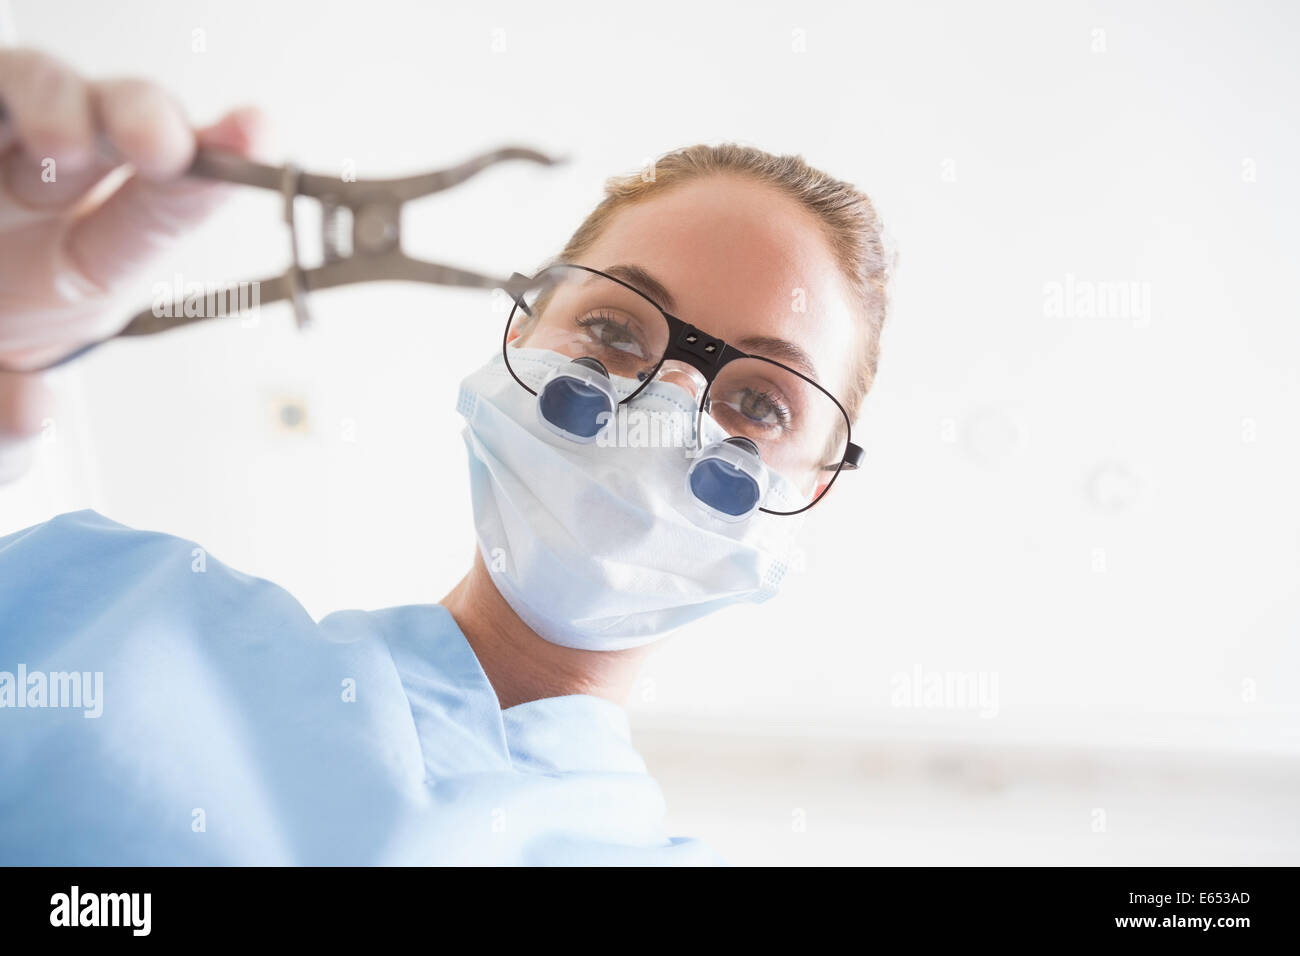 Dentiste en masque chirurgical et dentaire du patient sur une pince loupes holding Banque D'Images